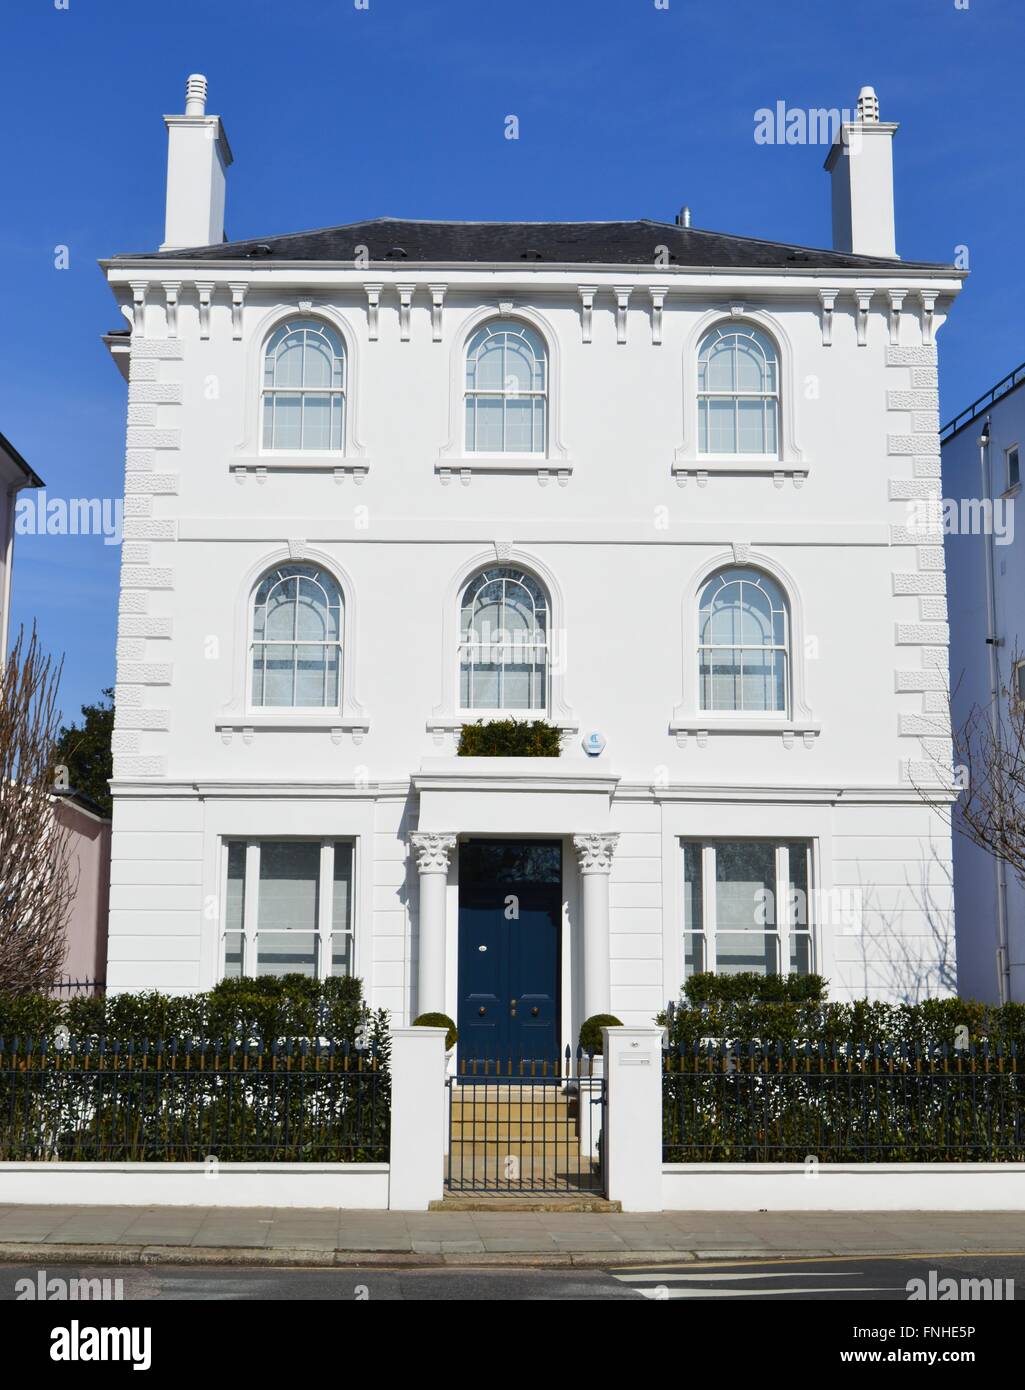 Große und schöne weiße doppelte fronted viktorianischen Haus in Primrose Hill, London UK. Ein Traumhaus, prime Immobilien, Stockfoto